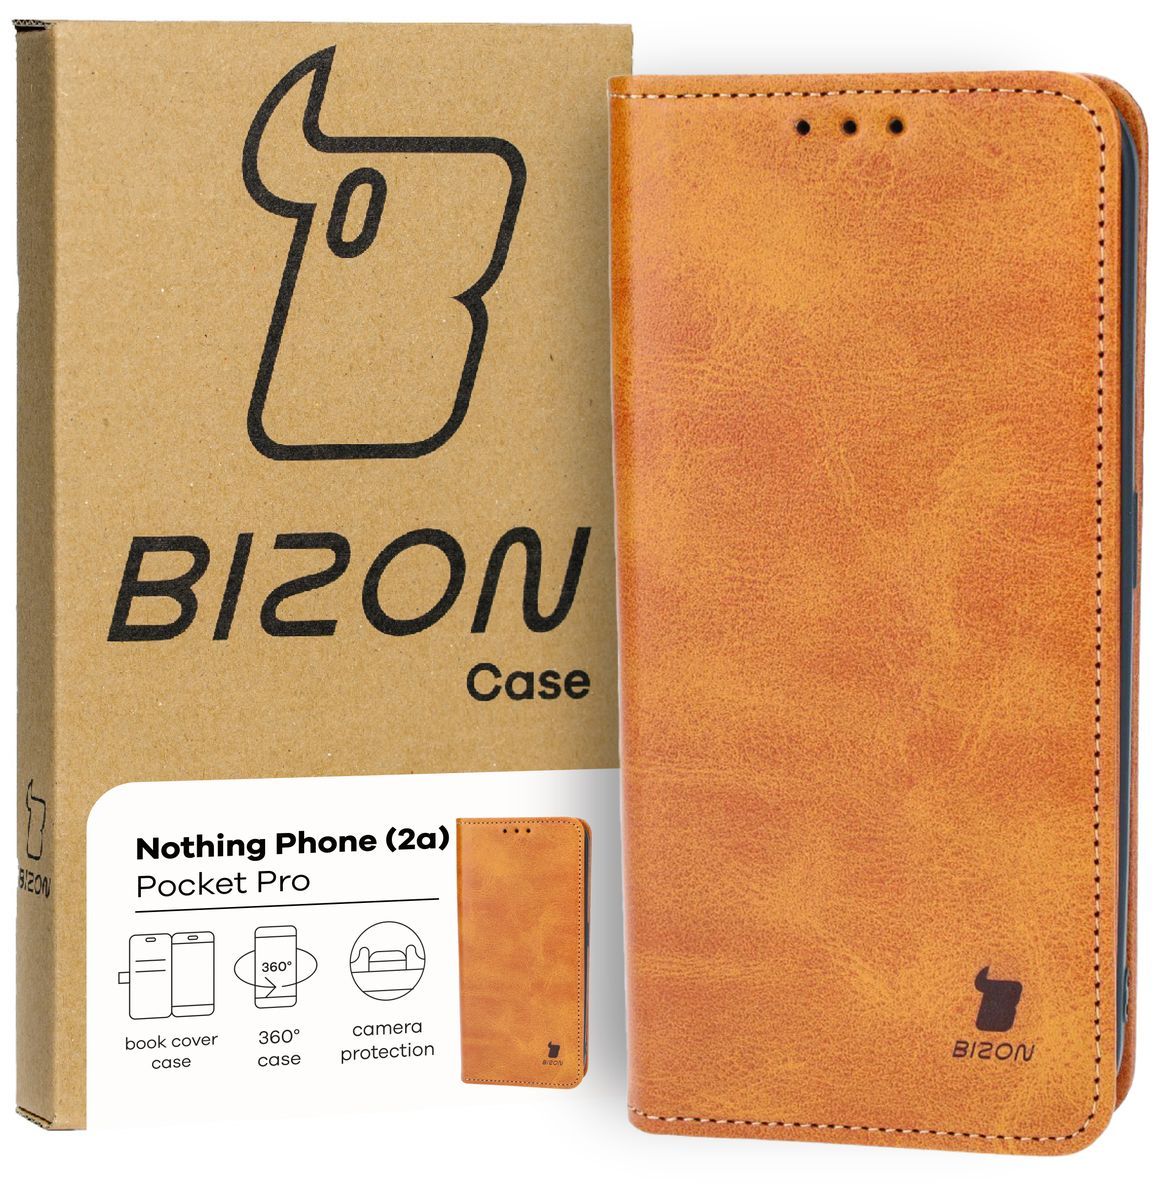 Schutzhülle für Nothing Phone (2a), Bizon Case Pocket Pro, Braun